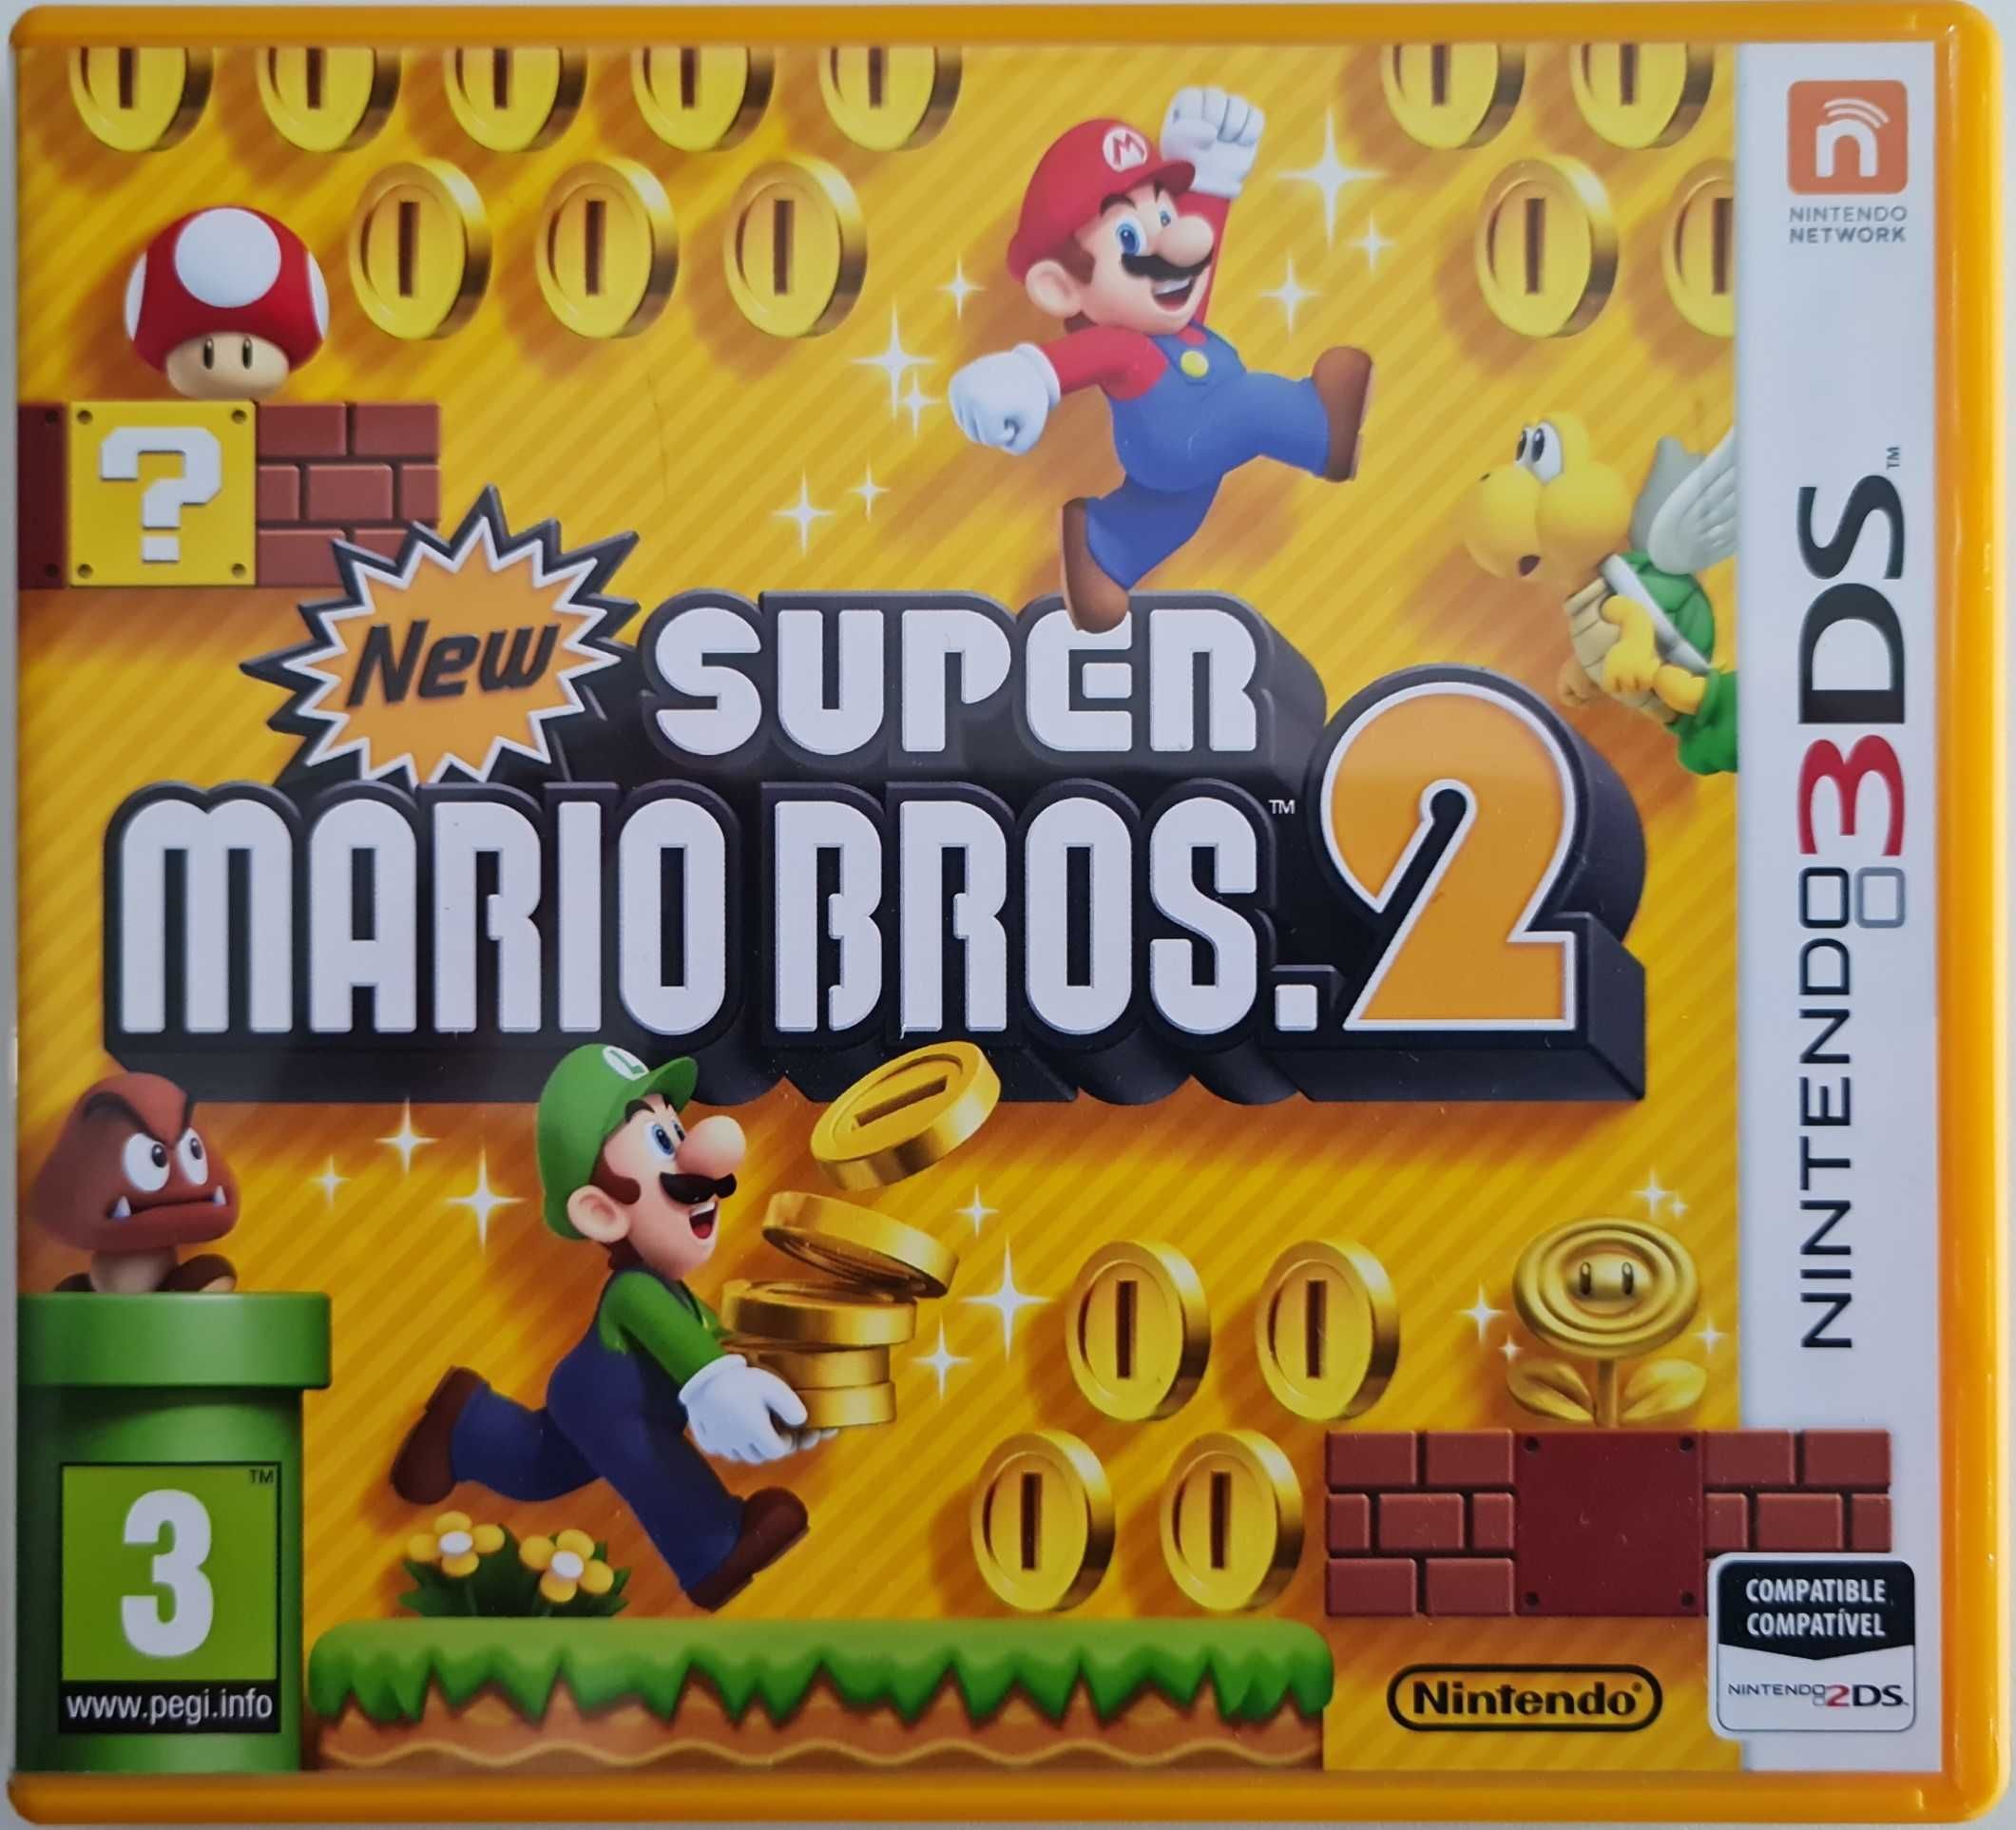 Pack de jogos para Nintendo 3DS XL (preço pack reduzido)